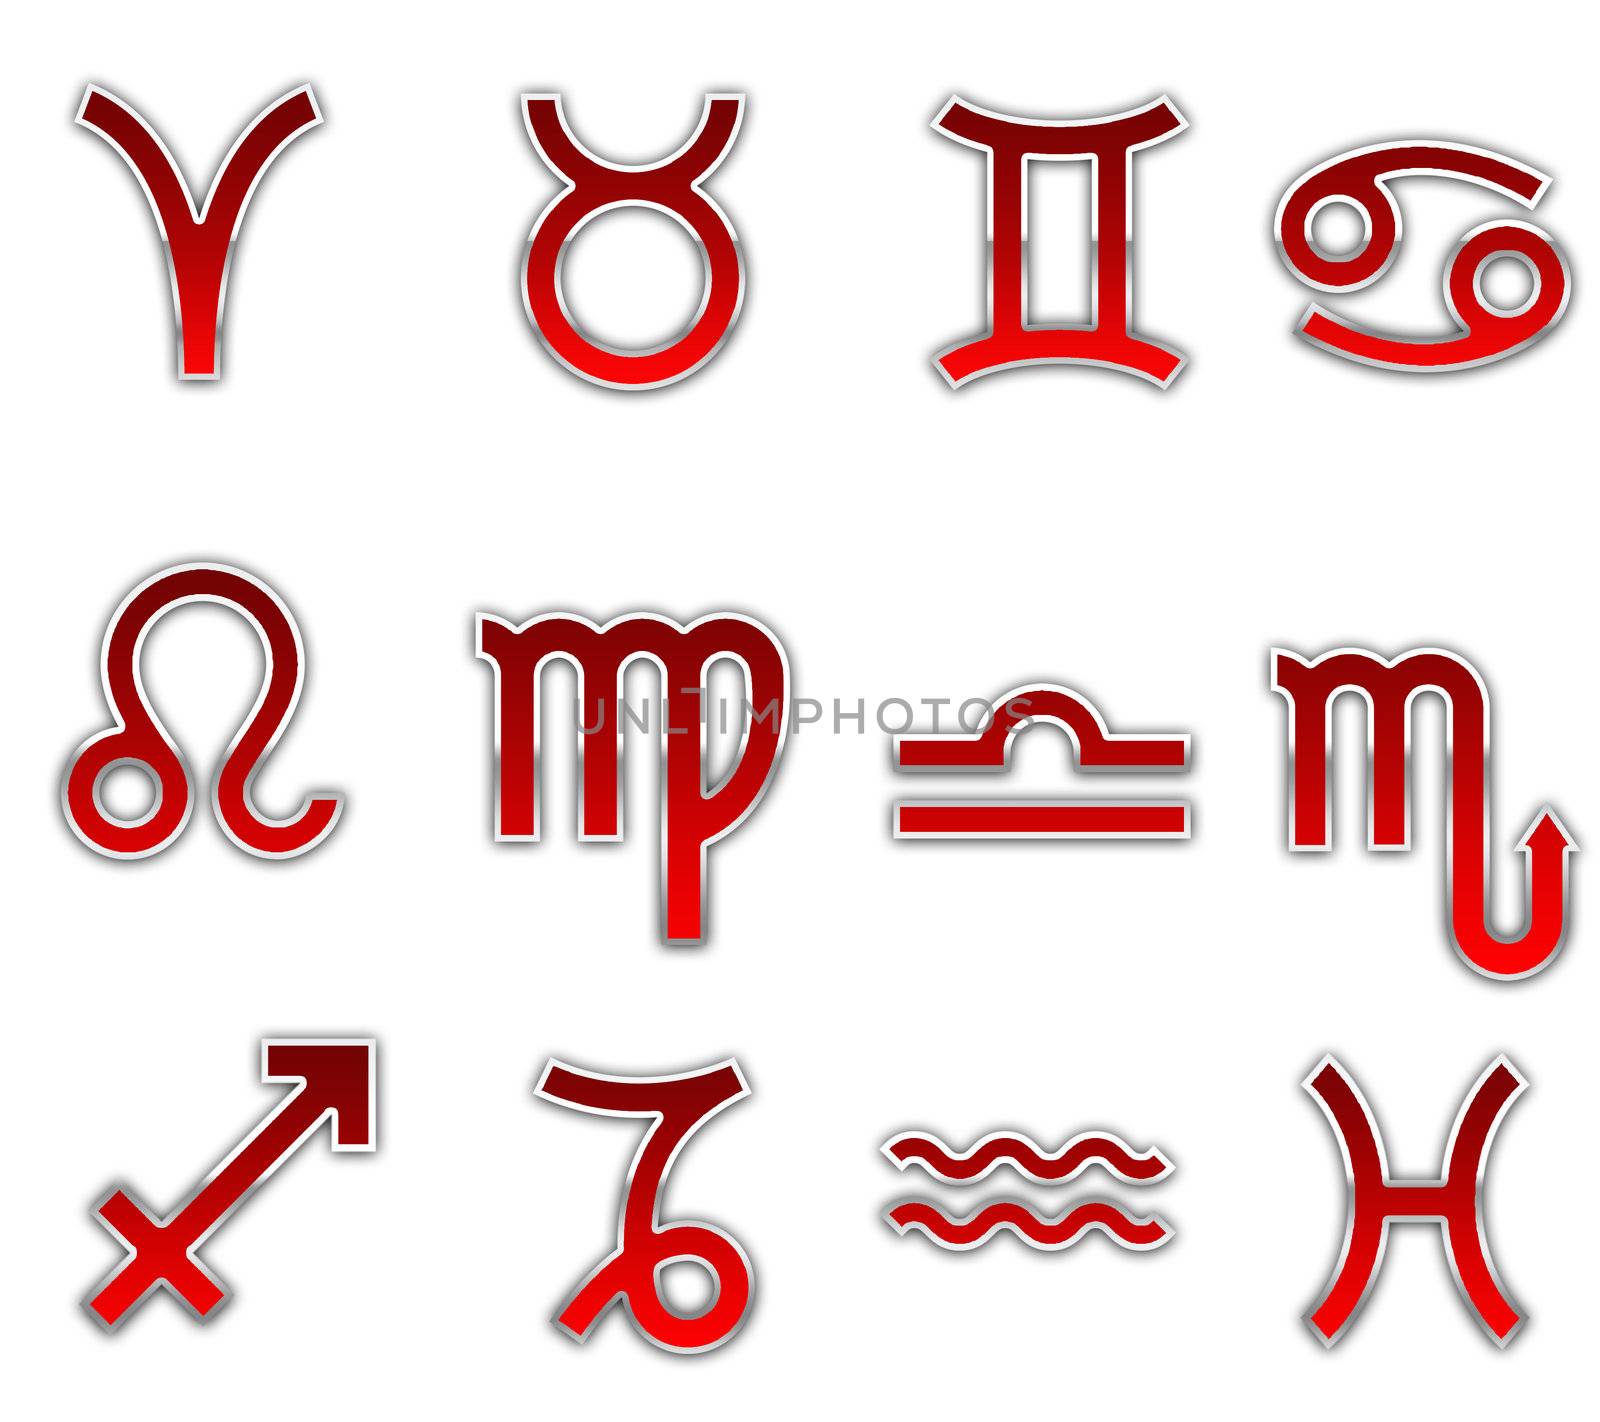 Zodiac signs by Dddaca